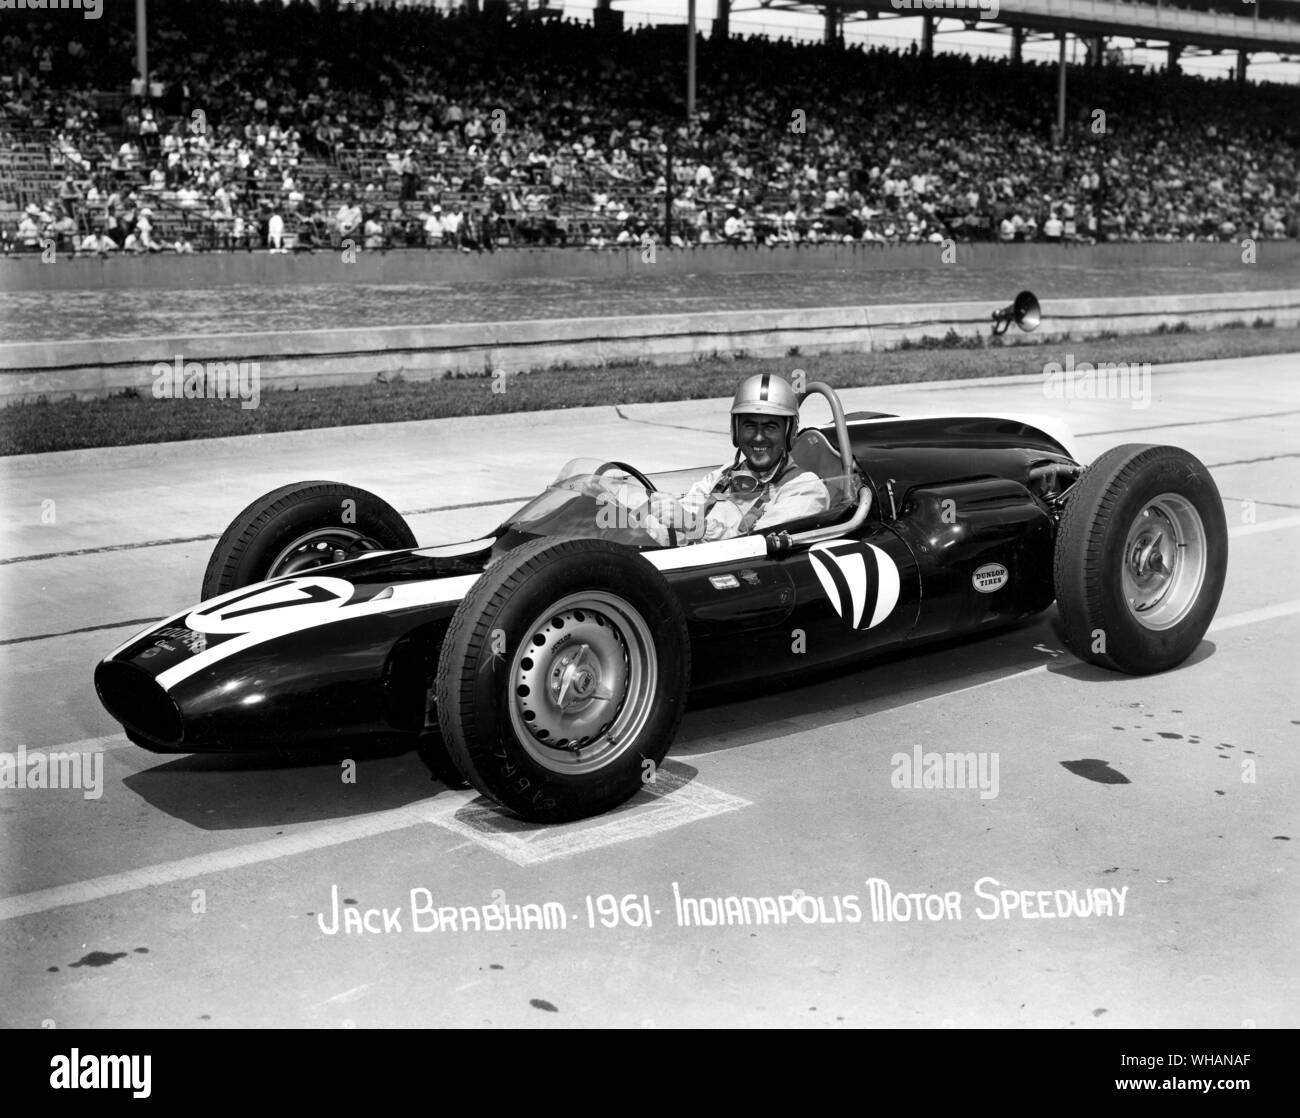 Jack Brabham 1961. Indianapolis Motor Speedway Stock Photo